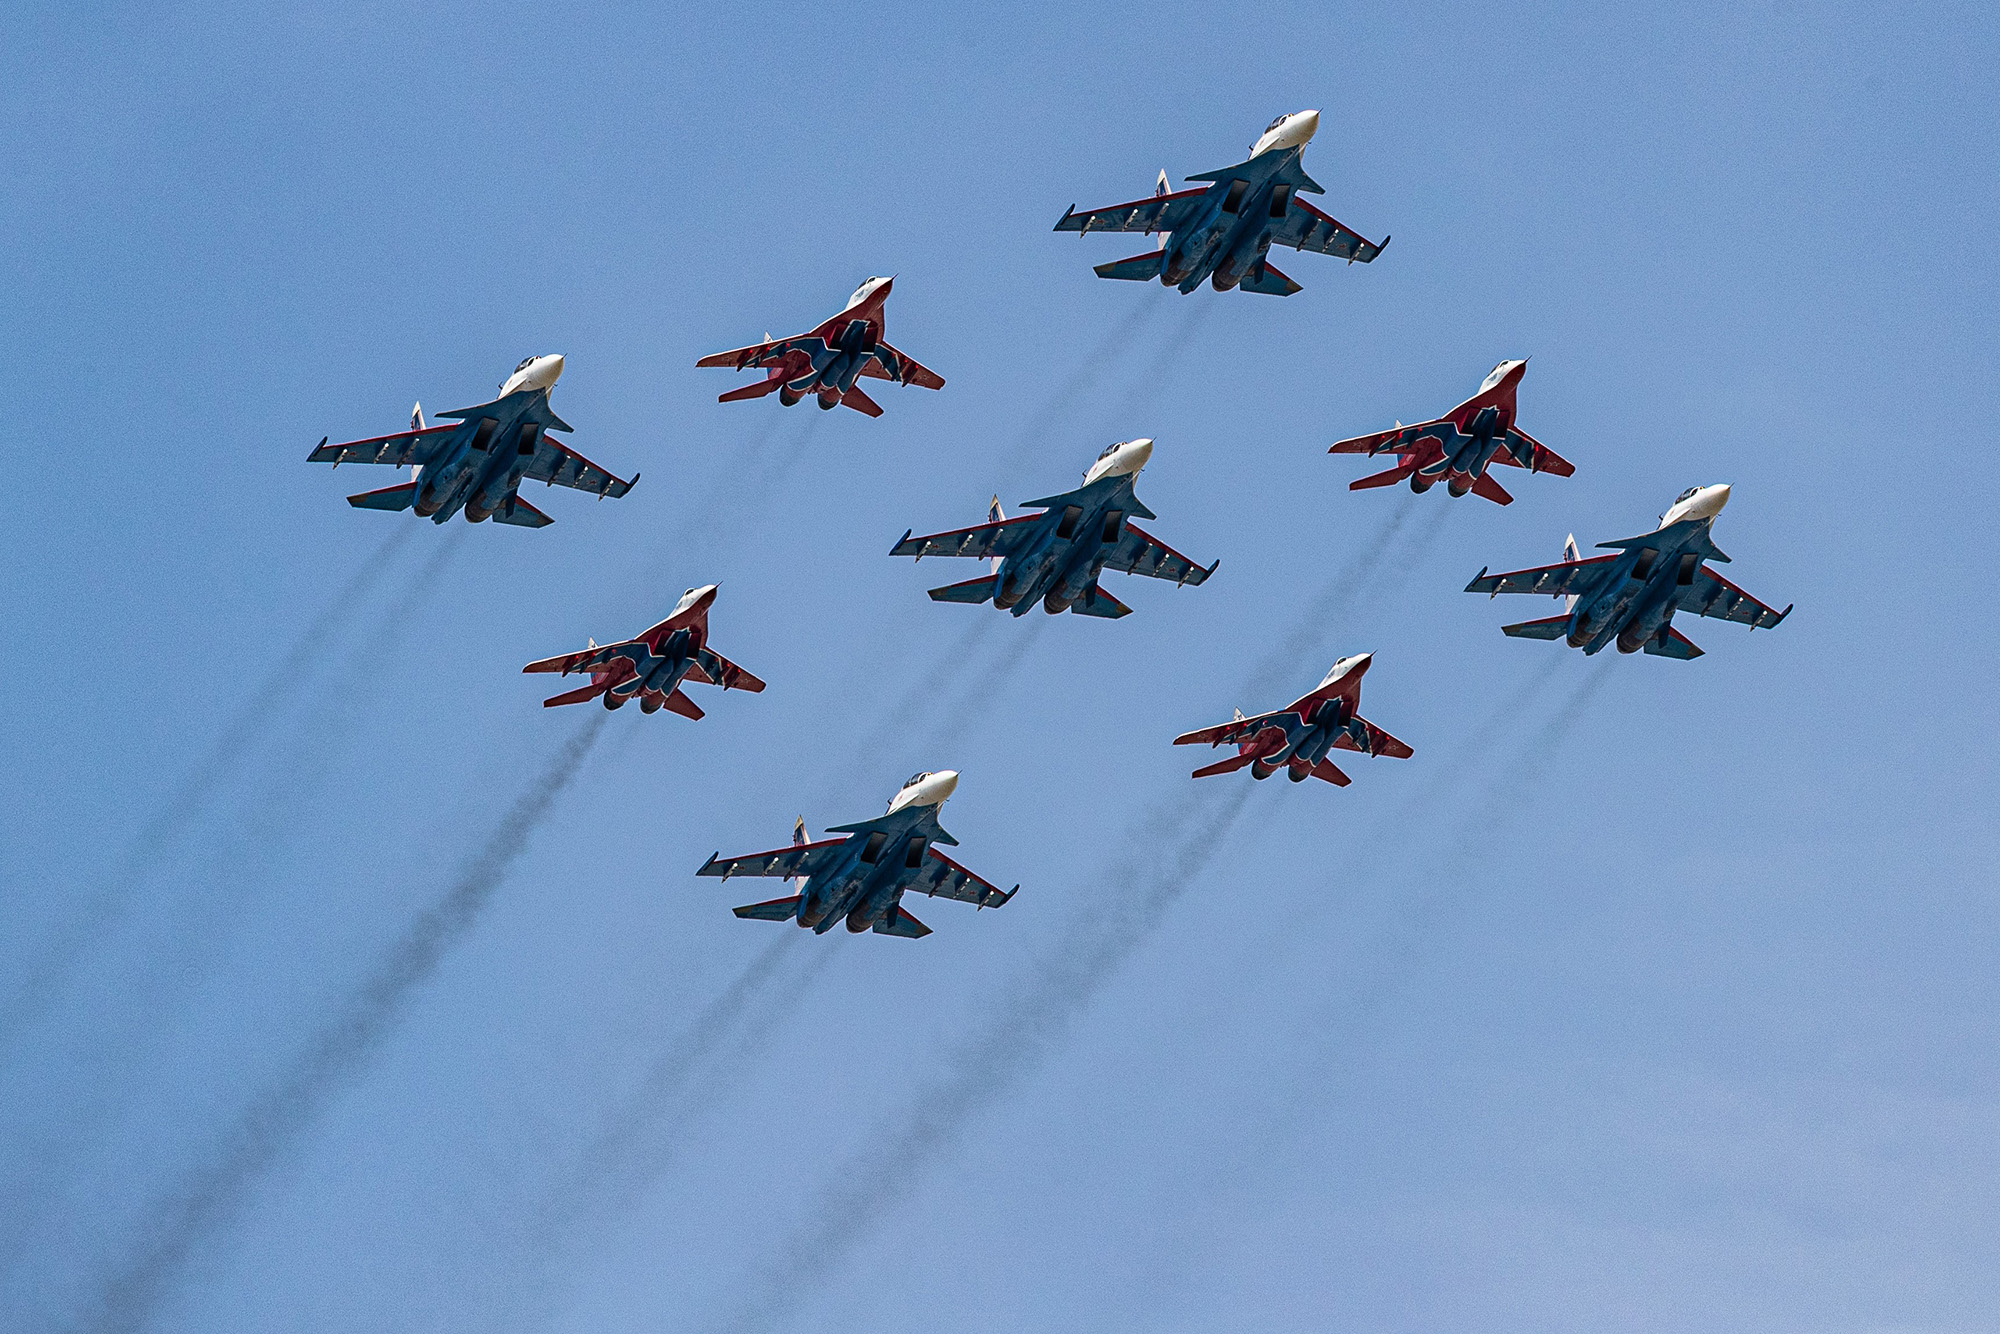 Striji Swifts'in MiG-29 jet avcı uçakları ve Russkiye Vityazi'nin Su-30SM jet avcı uçakları ile Rus Şövalyelerinin akrobatik ekipleri 7 Mayıs'ta Moskova'da Zafer Bayramı geçit töreninin eğitimine katılıyor.